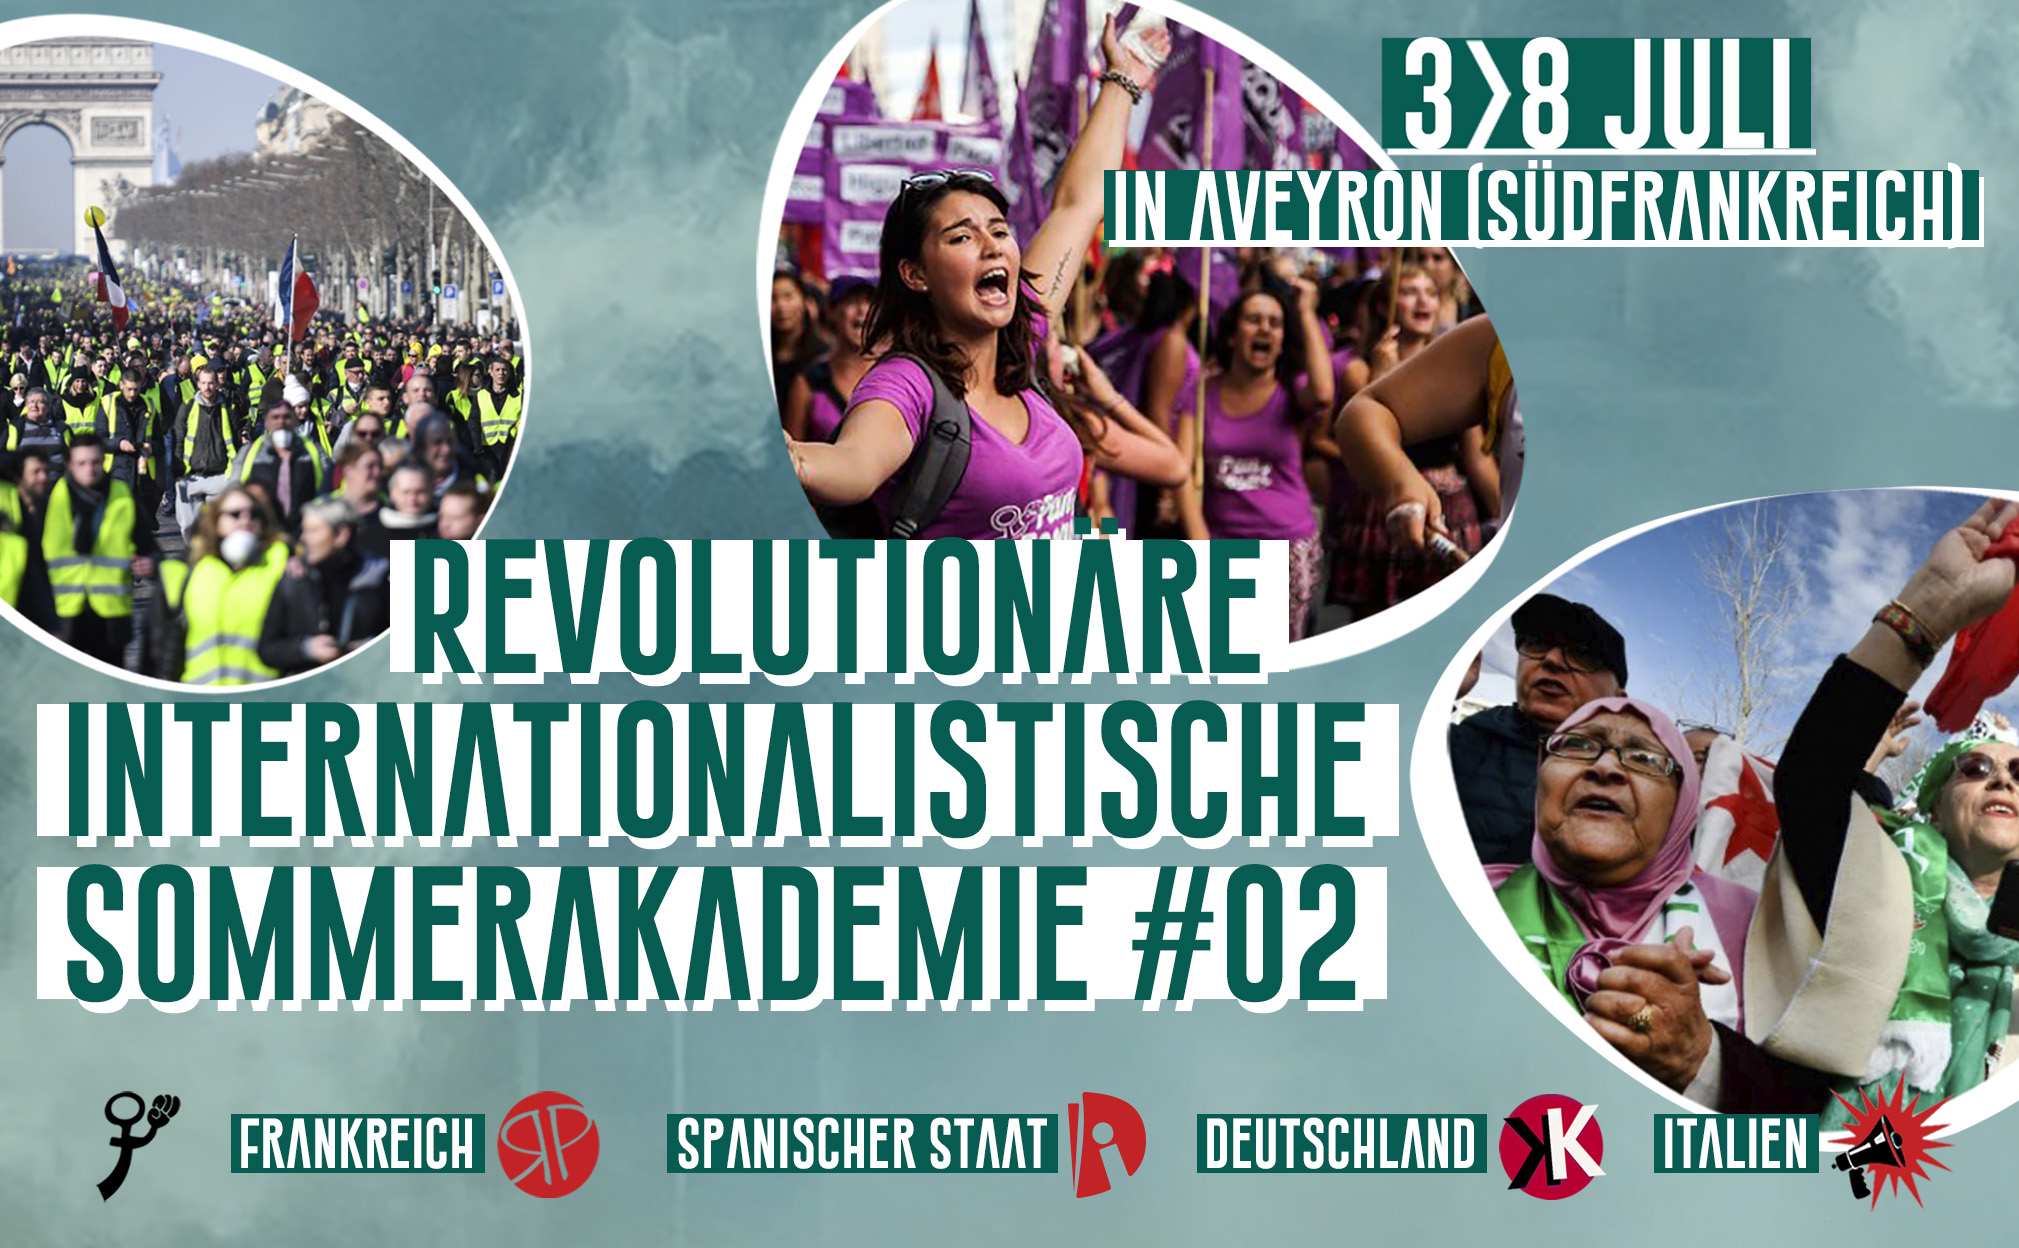 Revolutionäre internationalistische Sommerakademie #02 vom 3. bis 8. Juli in Südfrankreich